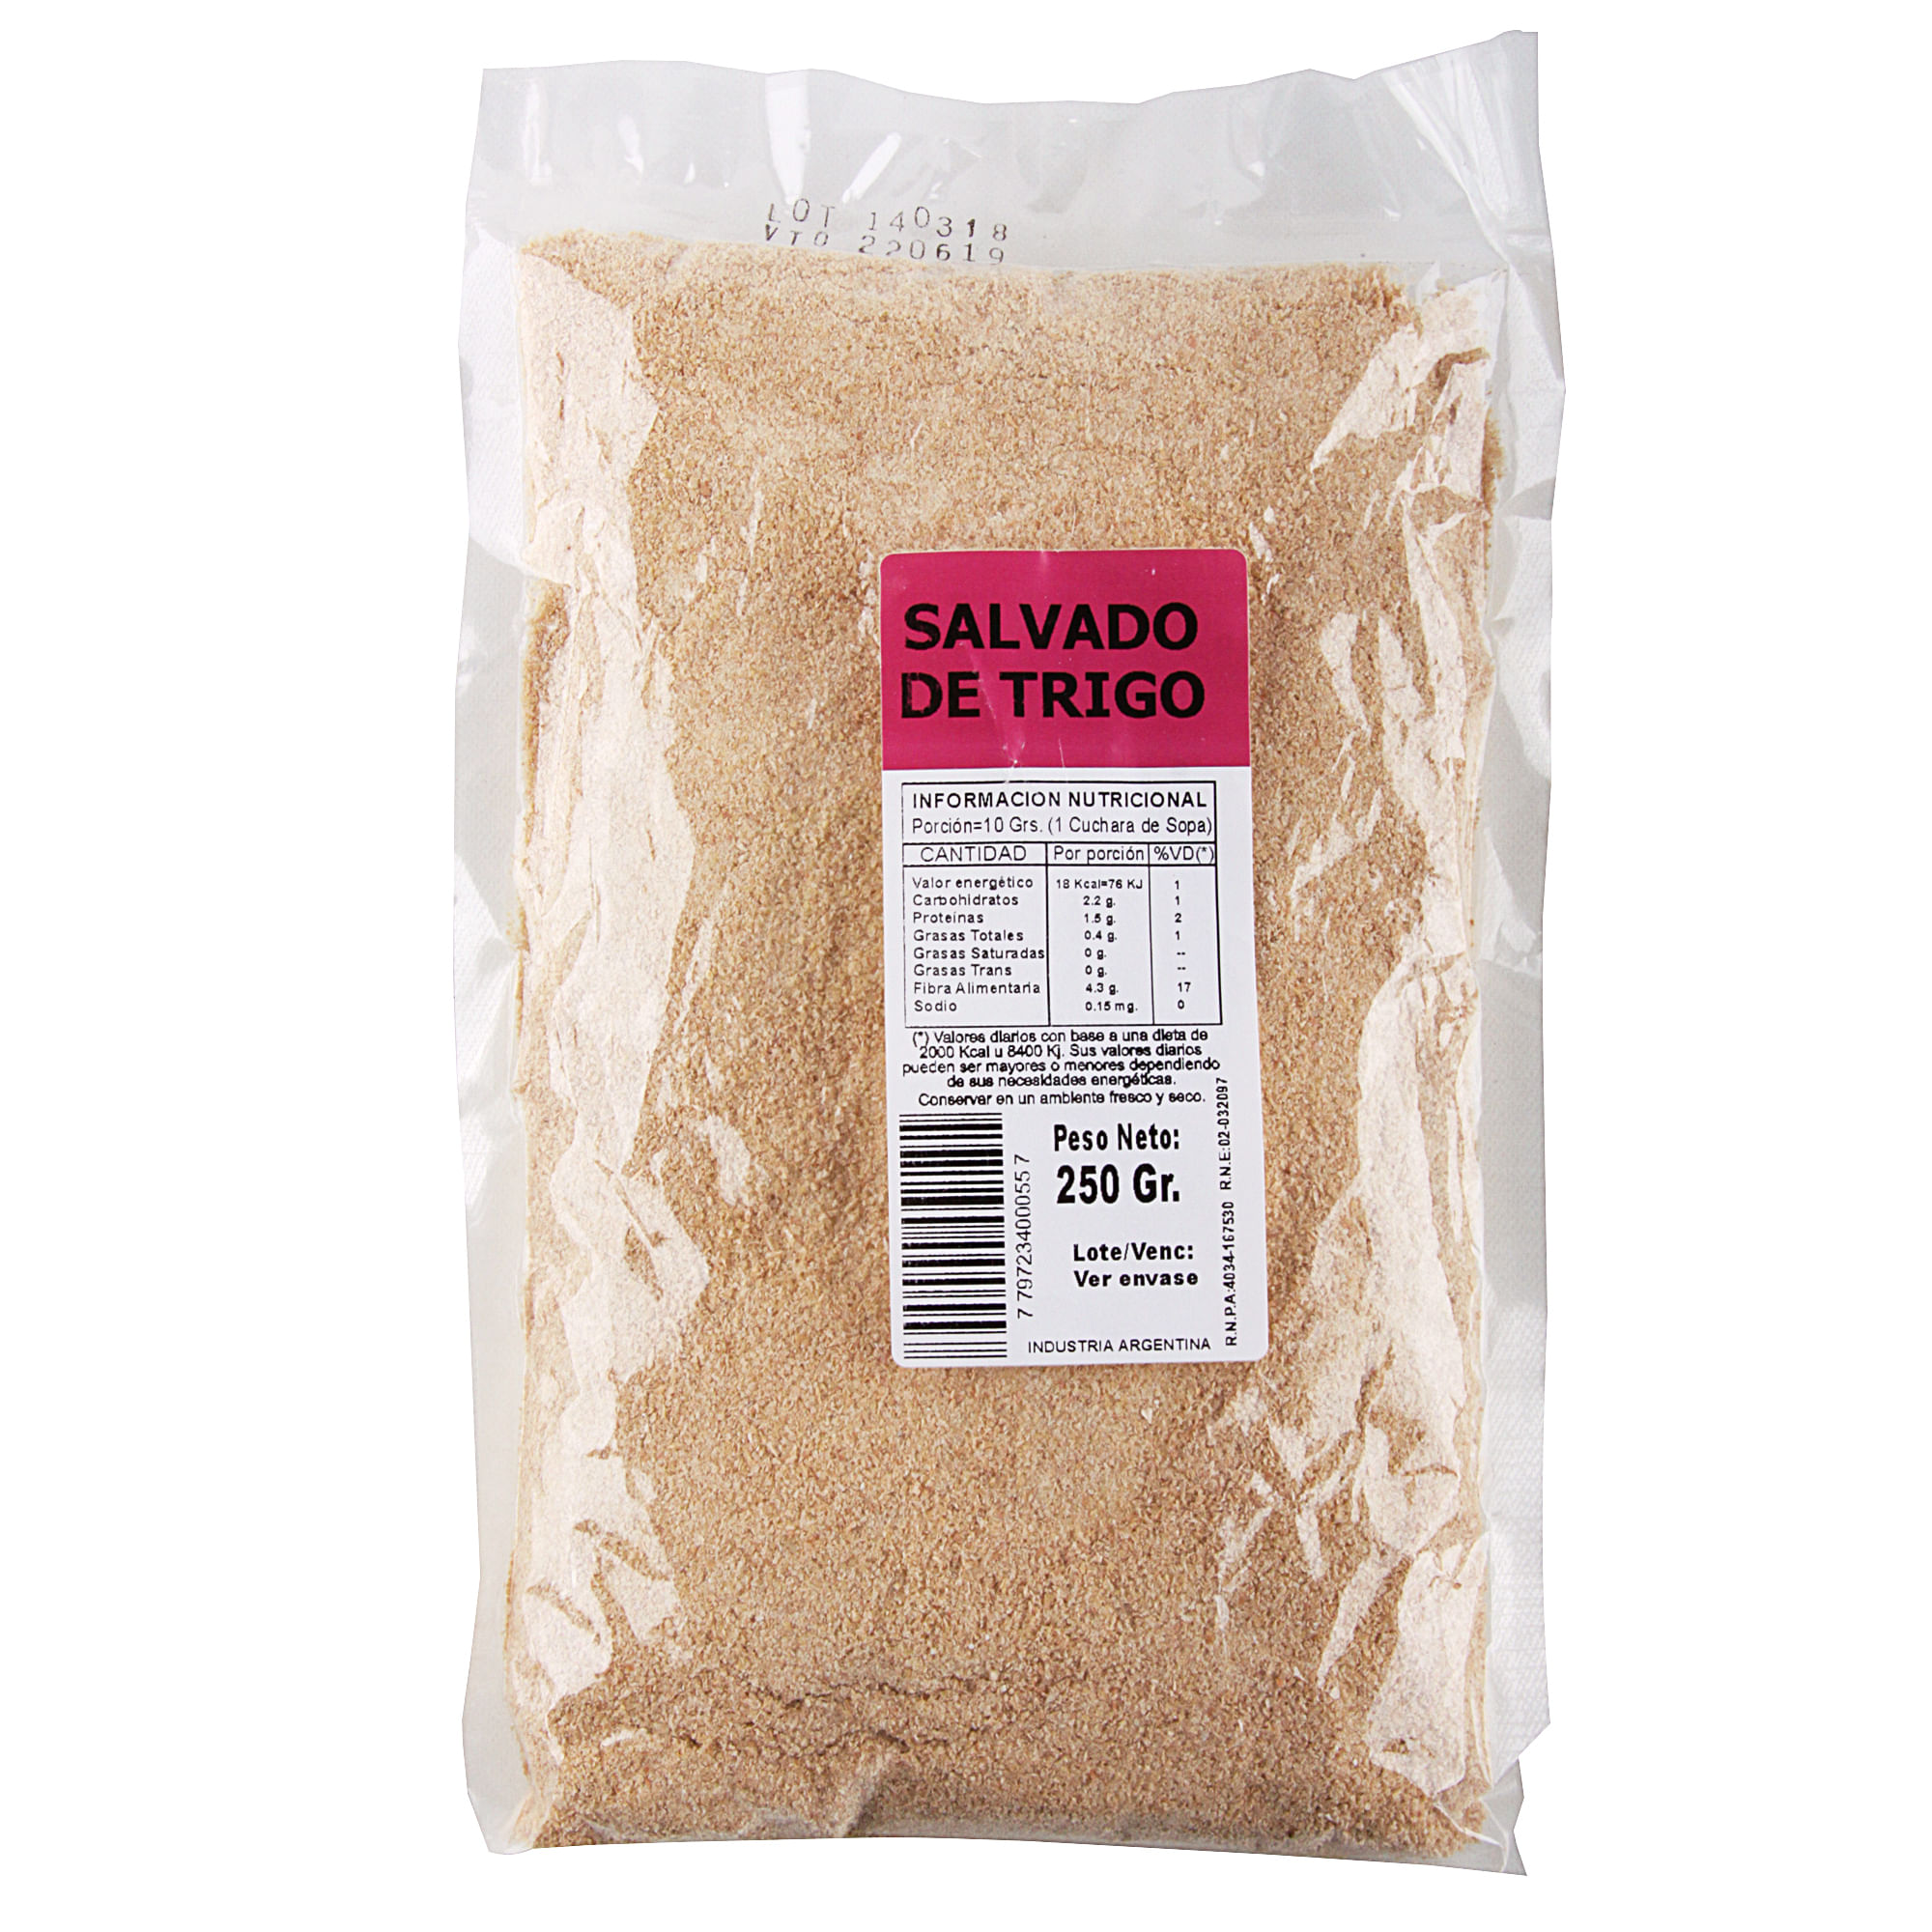 Salvado de trigo 250 g. - Carrefour